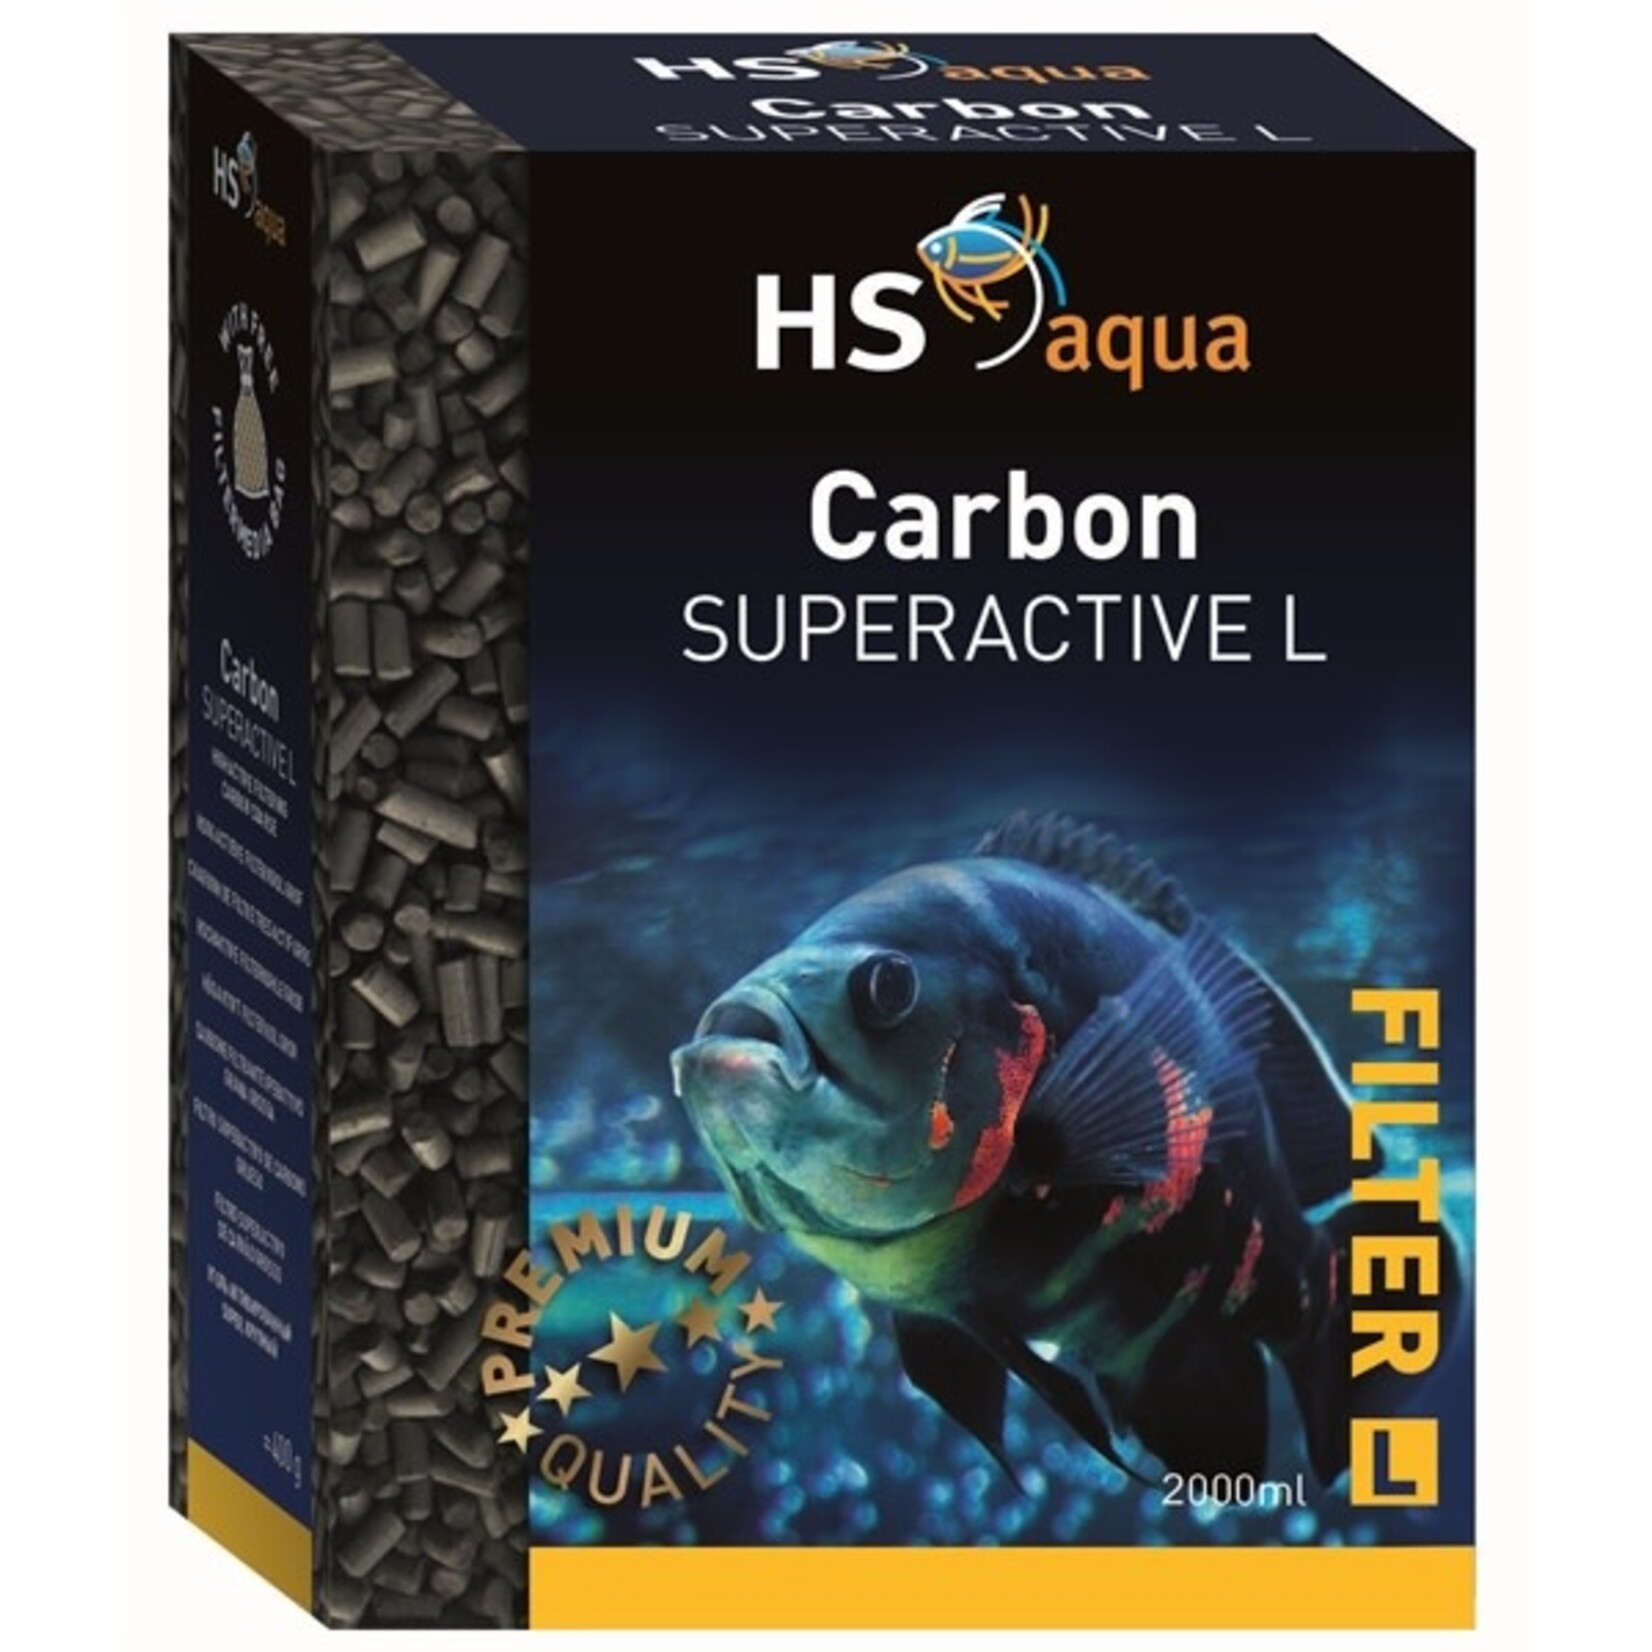 HS Aqua Carbon super active l 2 l/800 g